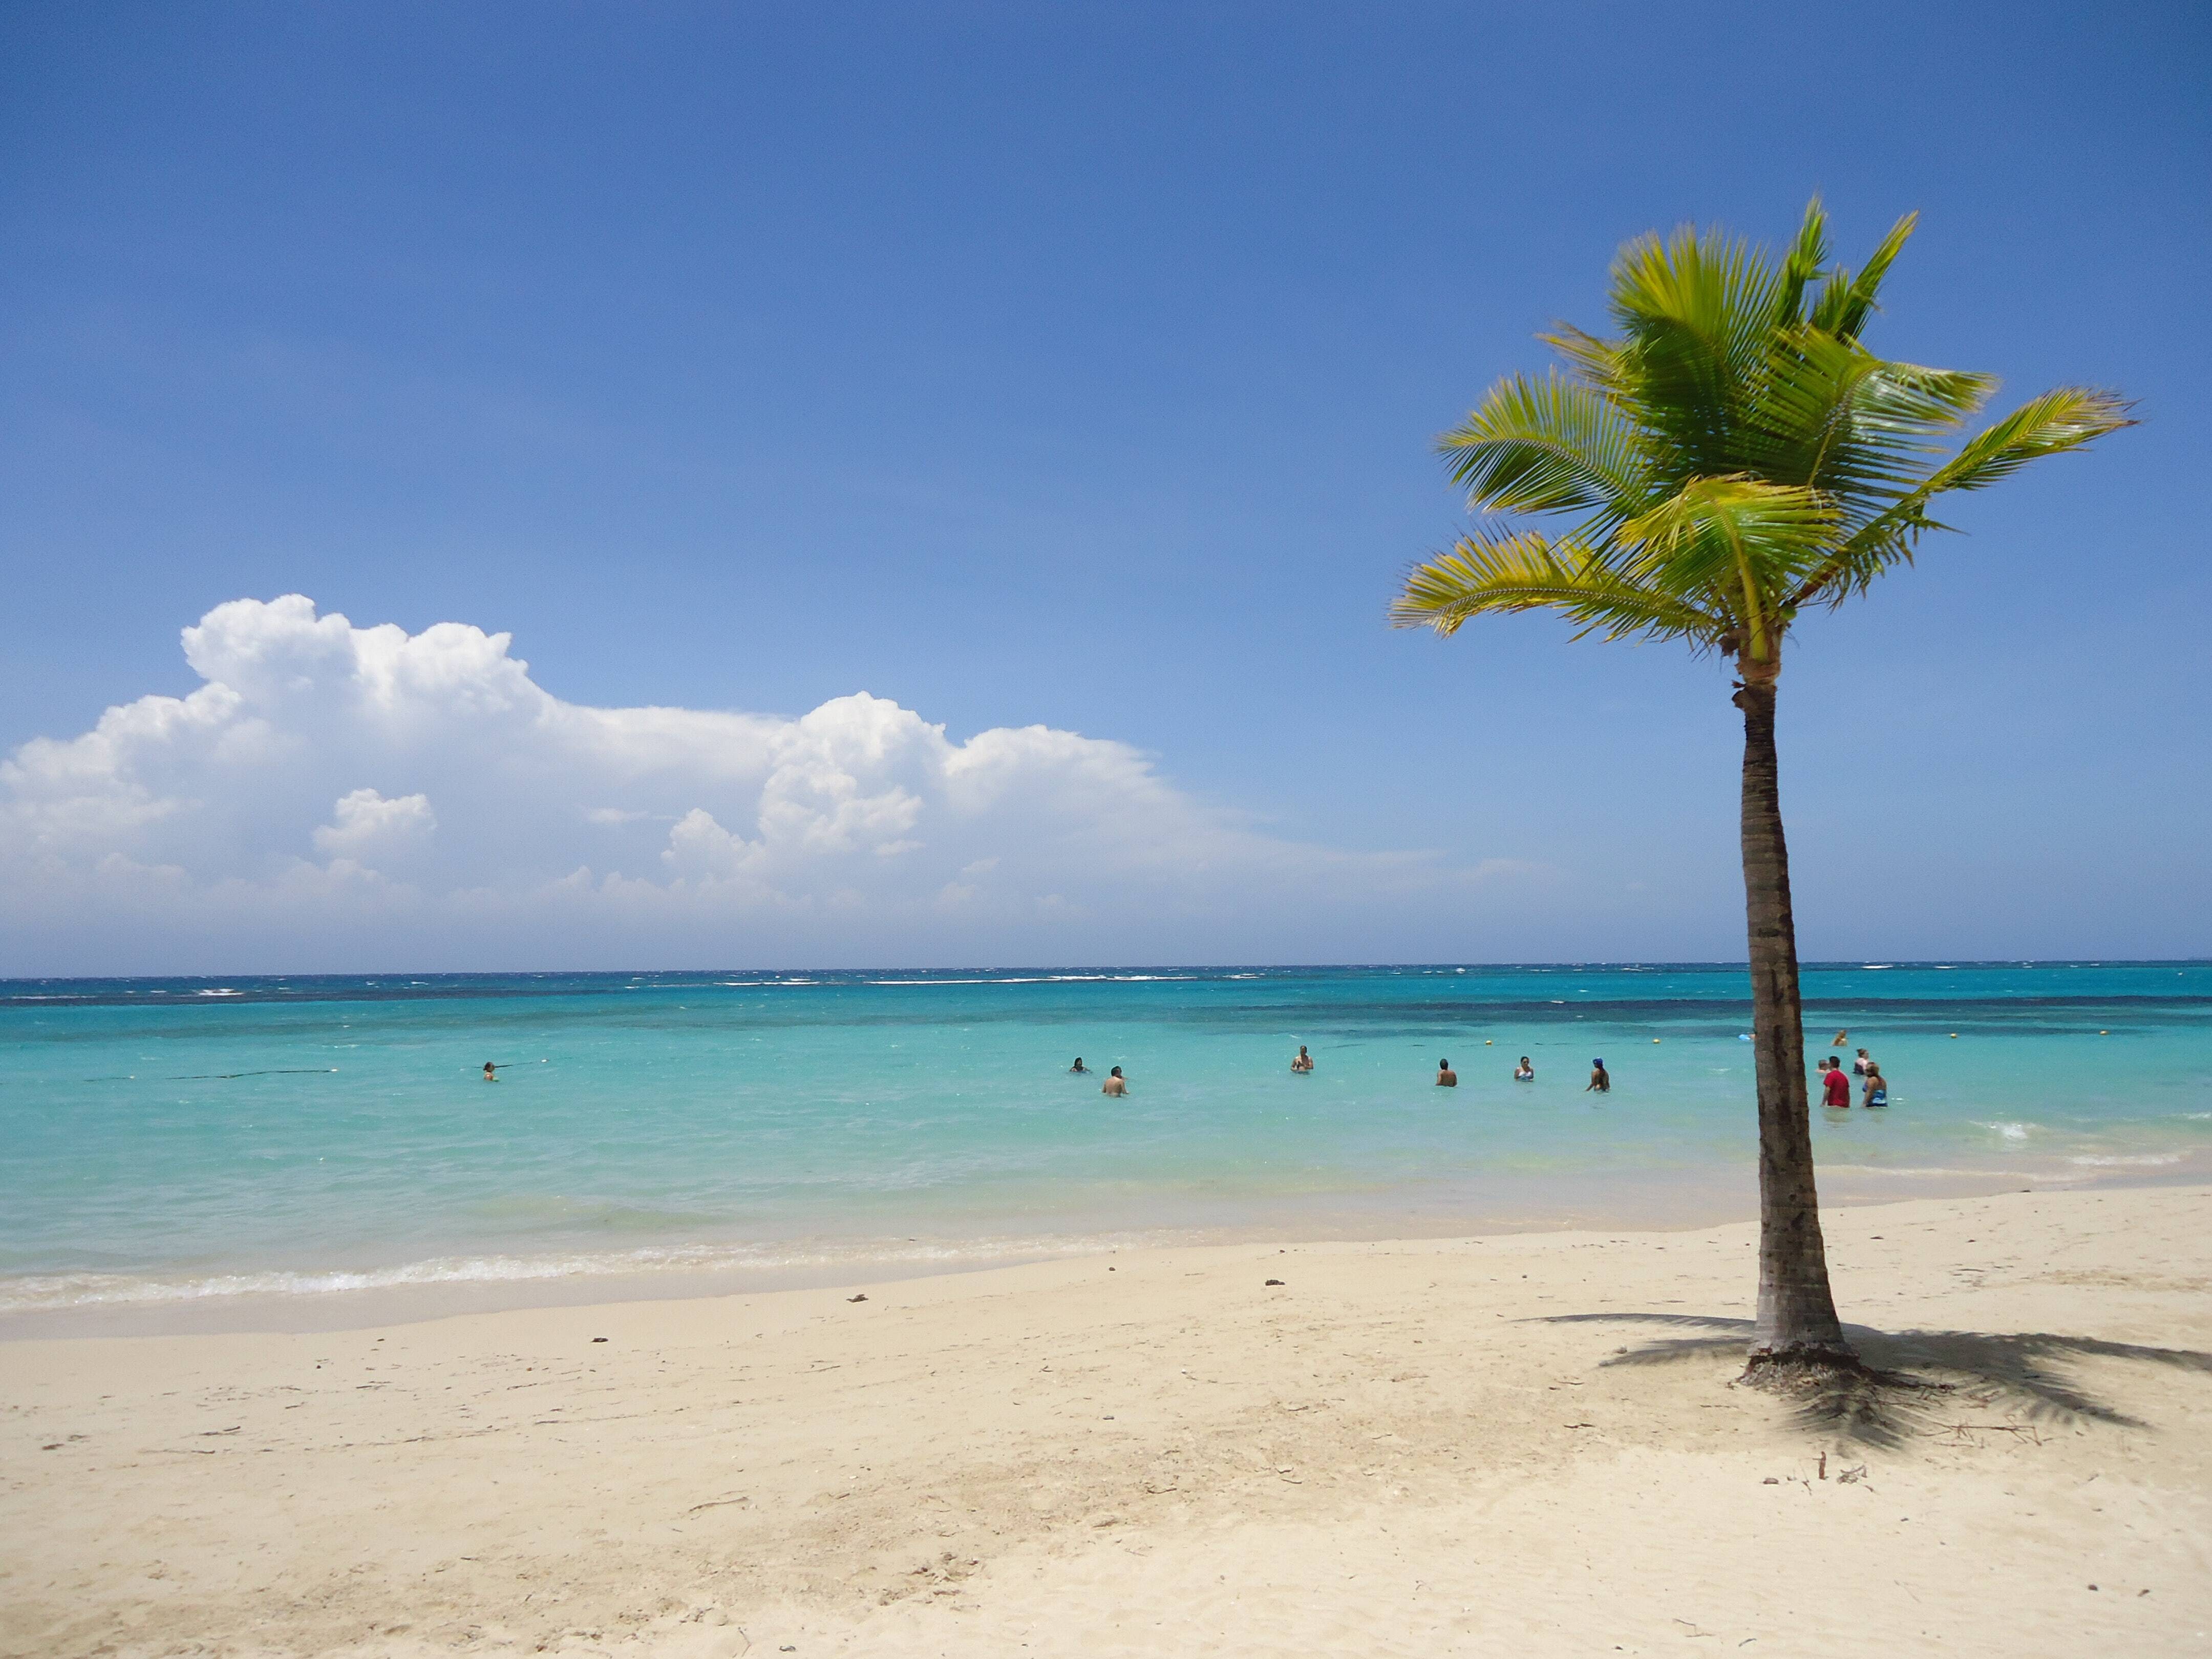 Destino dos famosos: o  reggae e as praias paradisíacas da Jamaica. Foto: a-v-b-s / unsplash